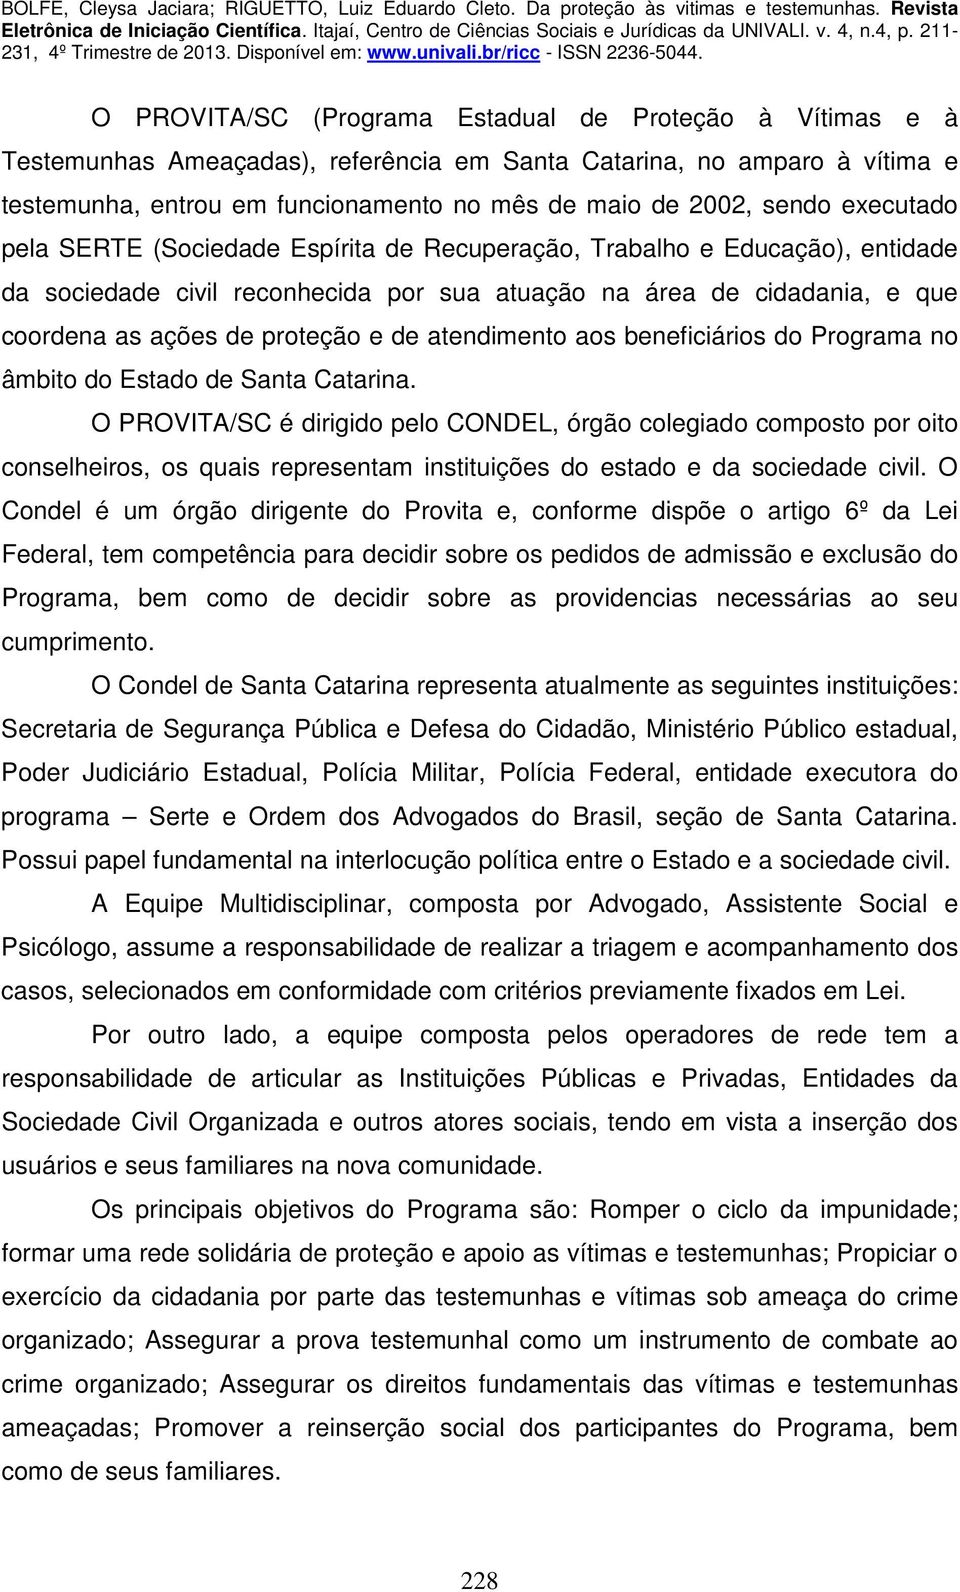 atendimento aos beneficiários do Programa no âmbito do Estado de Santa Catarina.